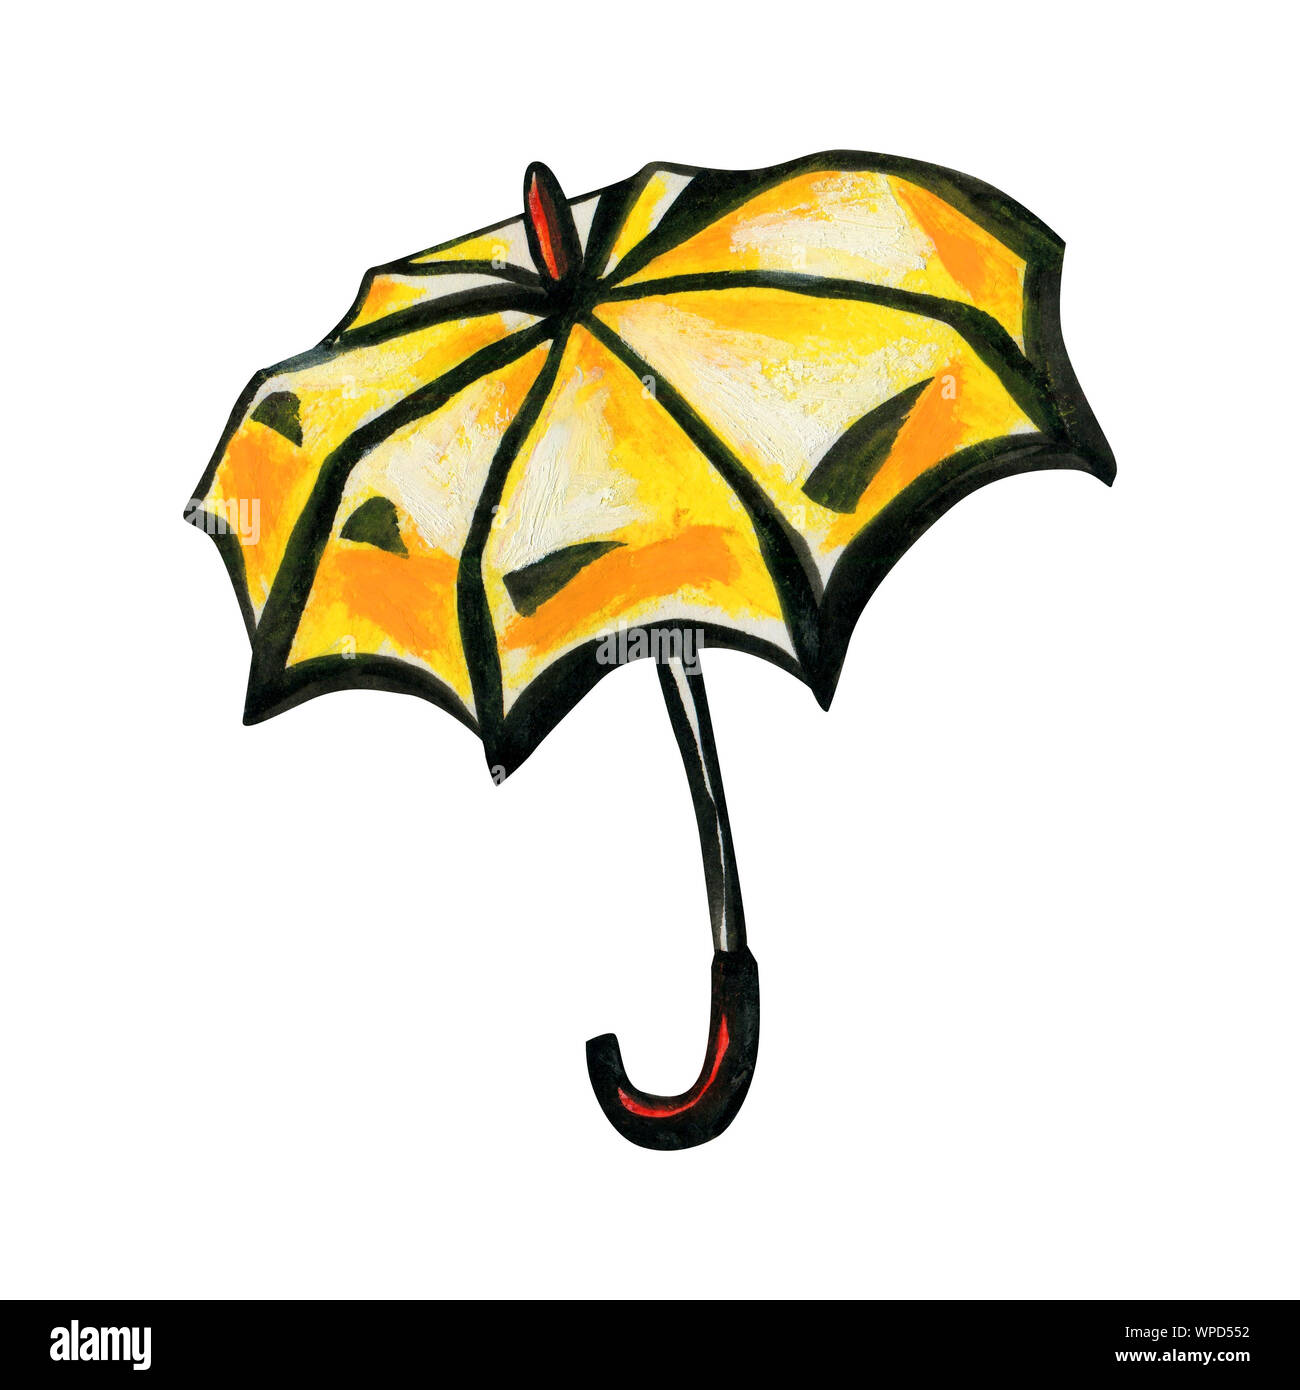 Canne parapluie jaune avec poignée rouge. Concept d'automne et de printemps. Objet unique Orange isolé sur fond blanc. Pour les promenades par temps de pluie. Banque D'Images